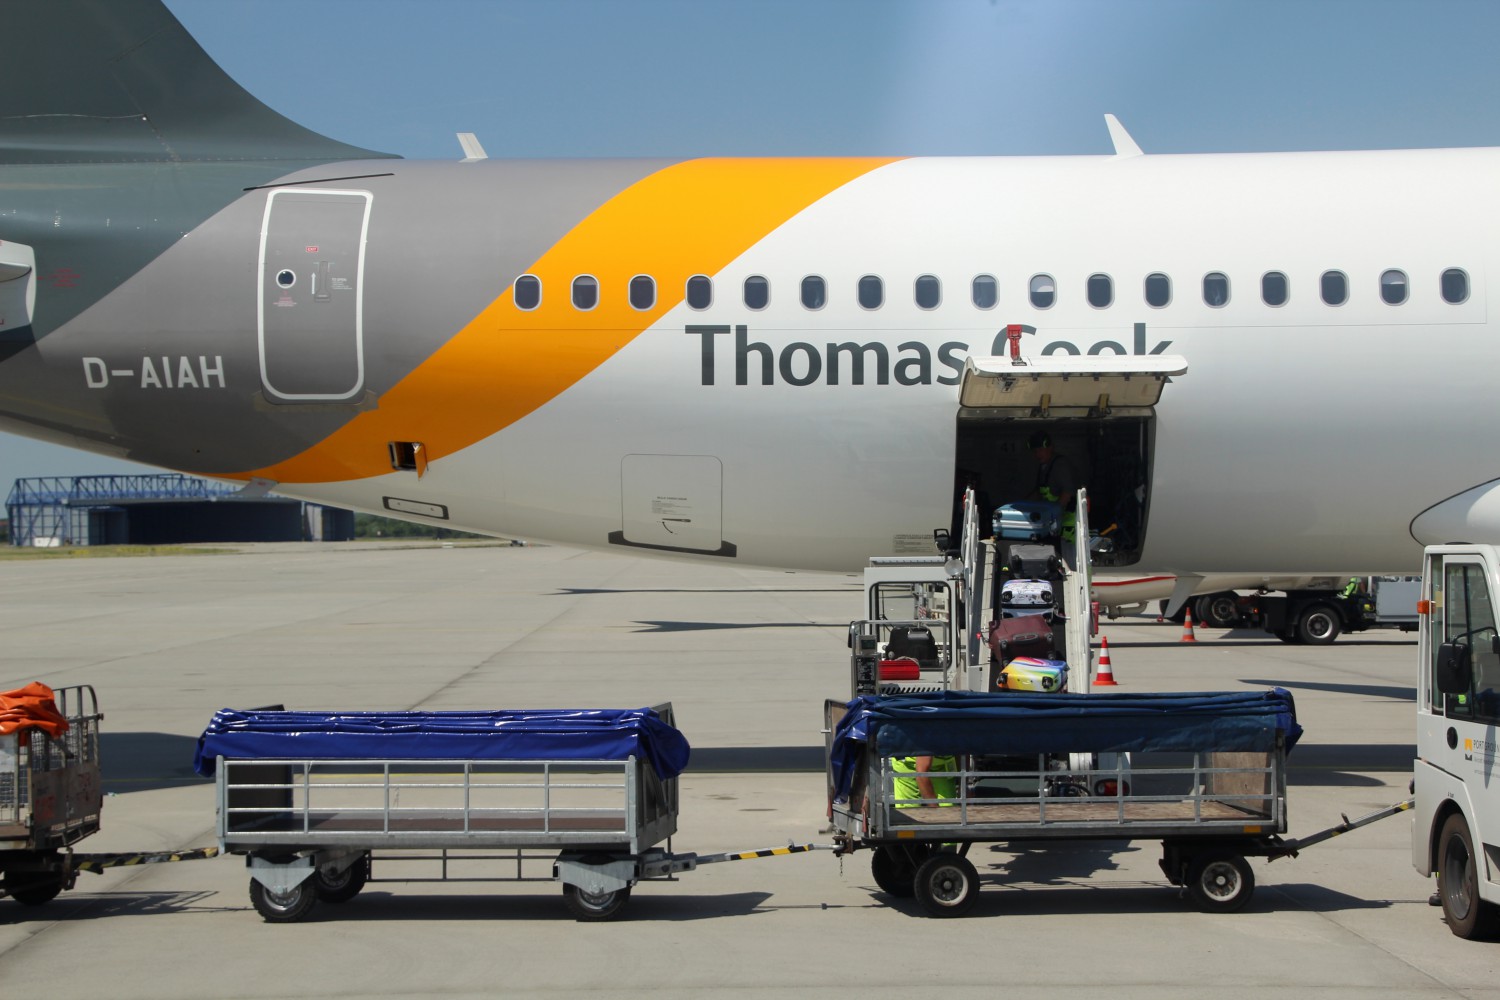 Foto: Heckansicht eines Flugzeuges was mit Gepäckstücken auf einer Rampe zur Ladeluke beladen wird. Davor stehen Kofferwagen.